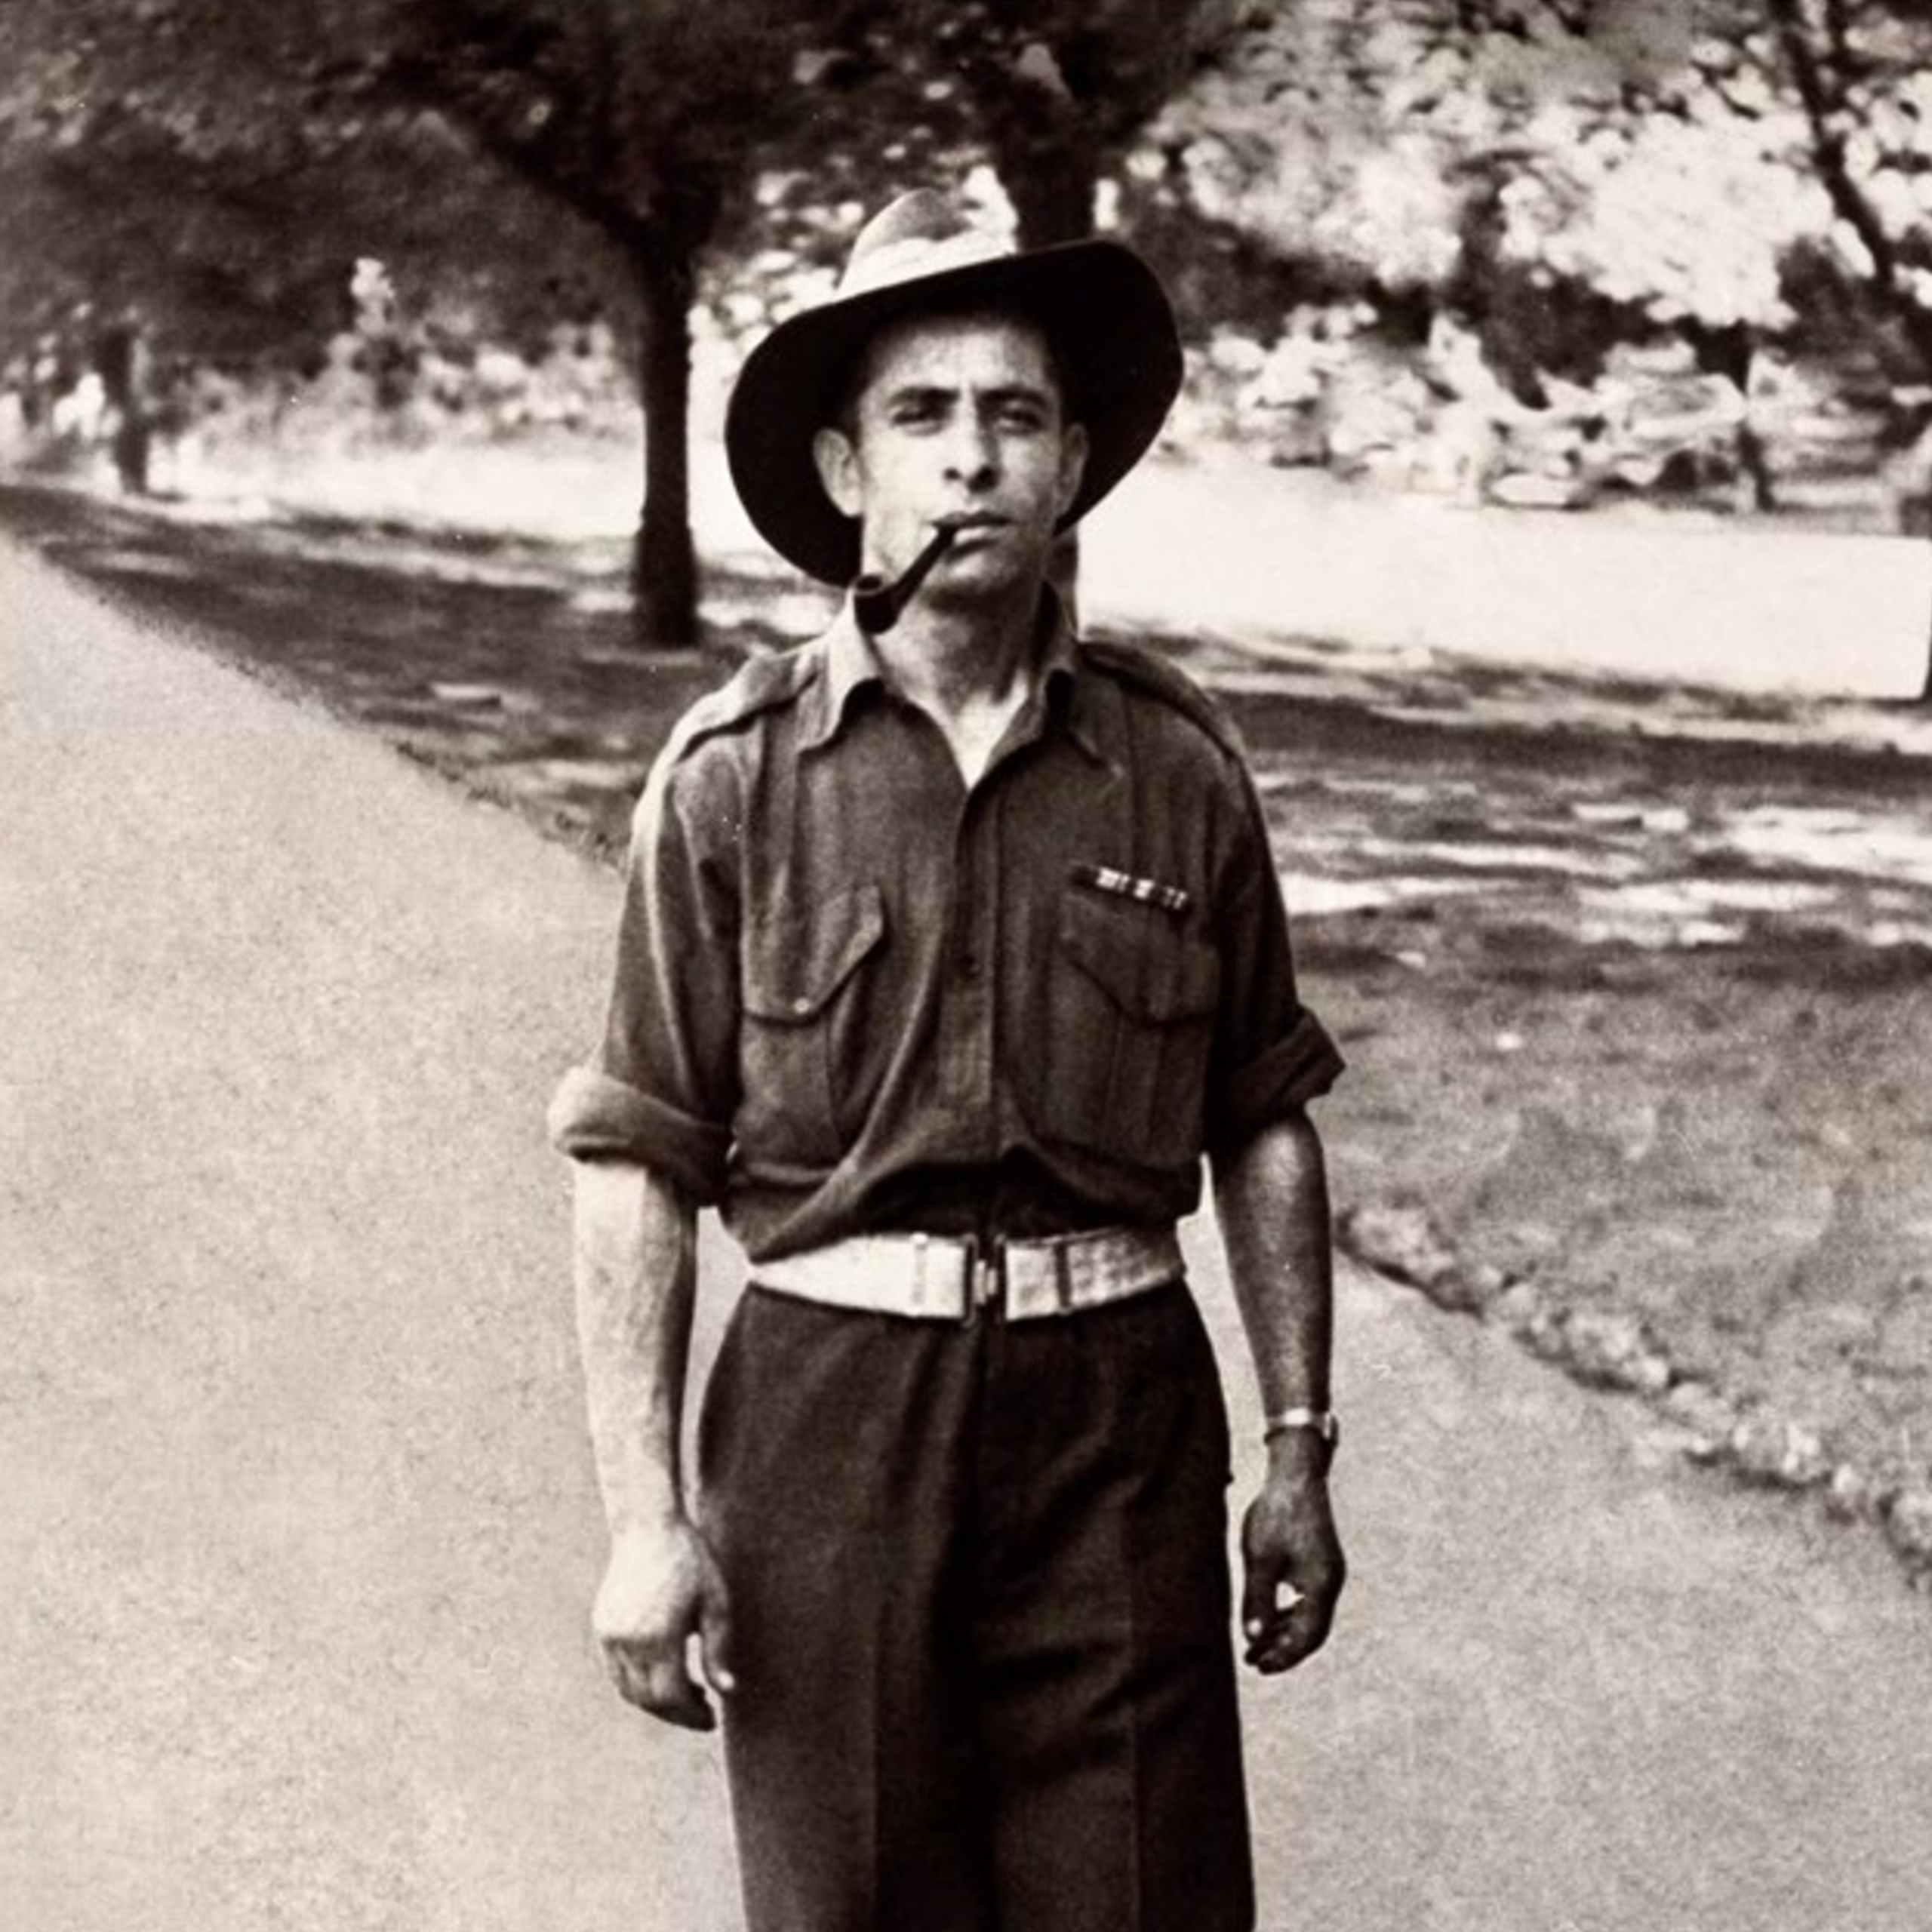 Man in Australian wartime uniform